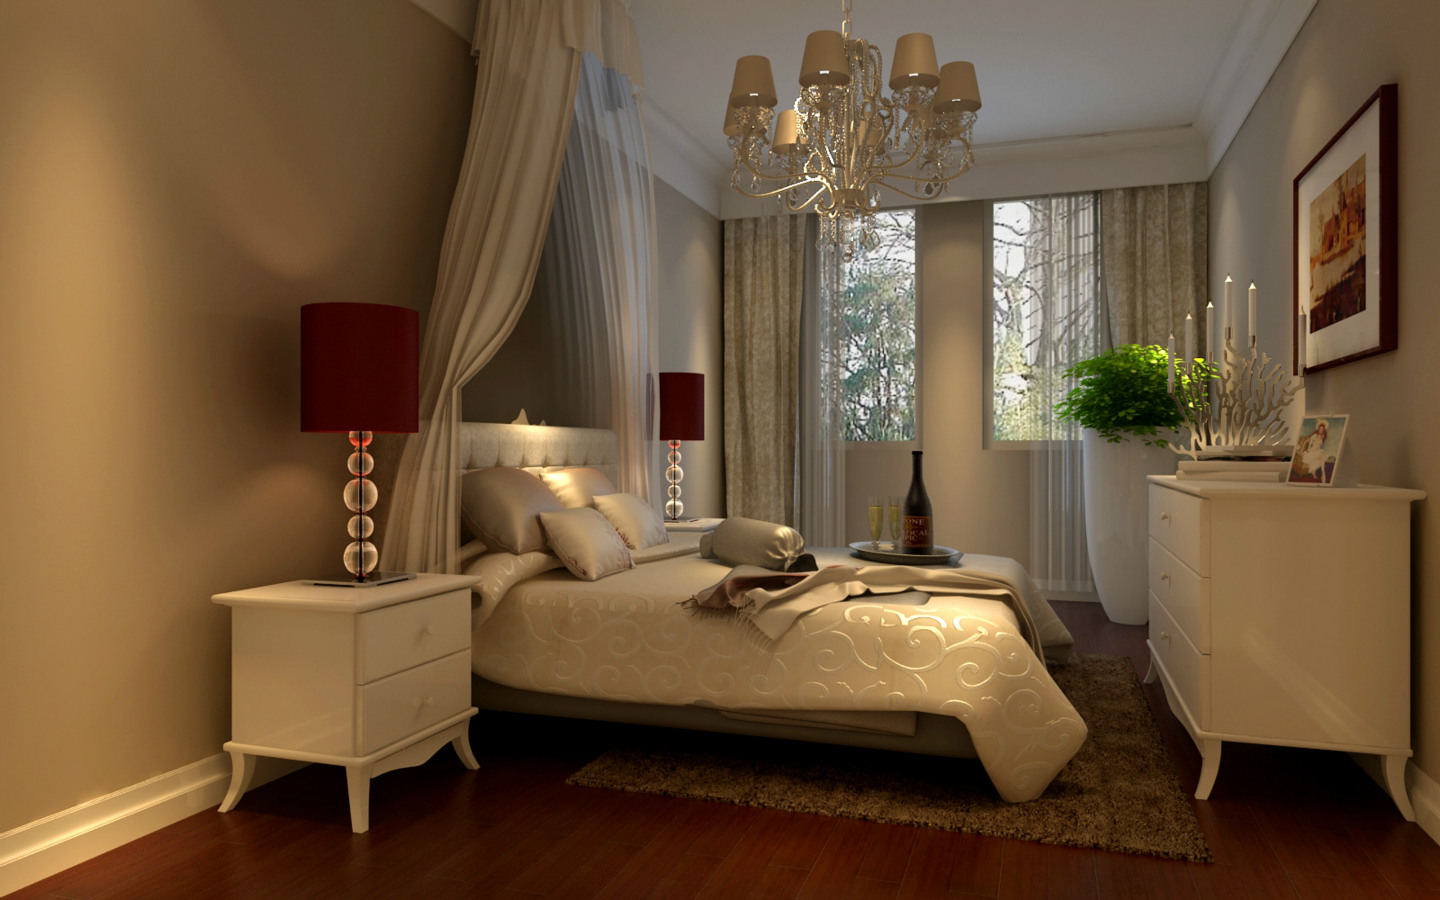 简约 欧式 三居 别墅 旧房改造 卧室图片来自今朝装饰小张在120平 经典中式设计的分享